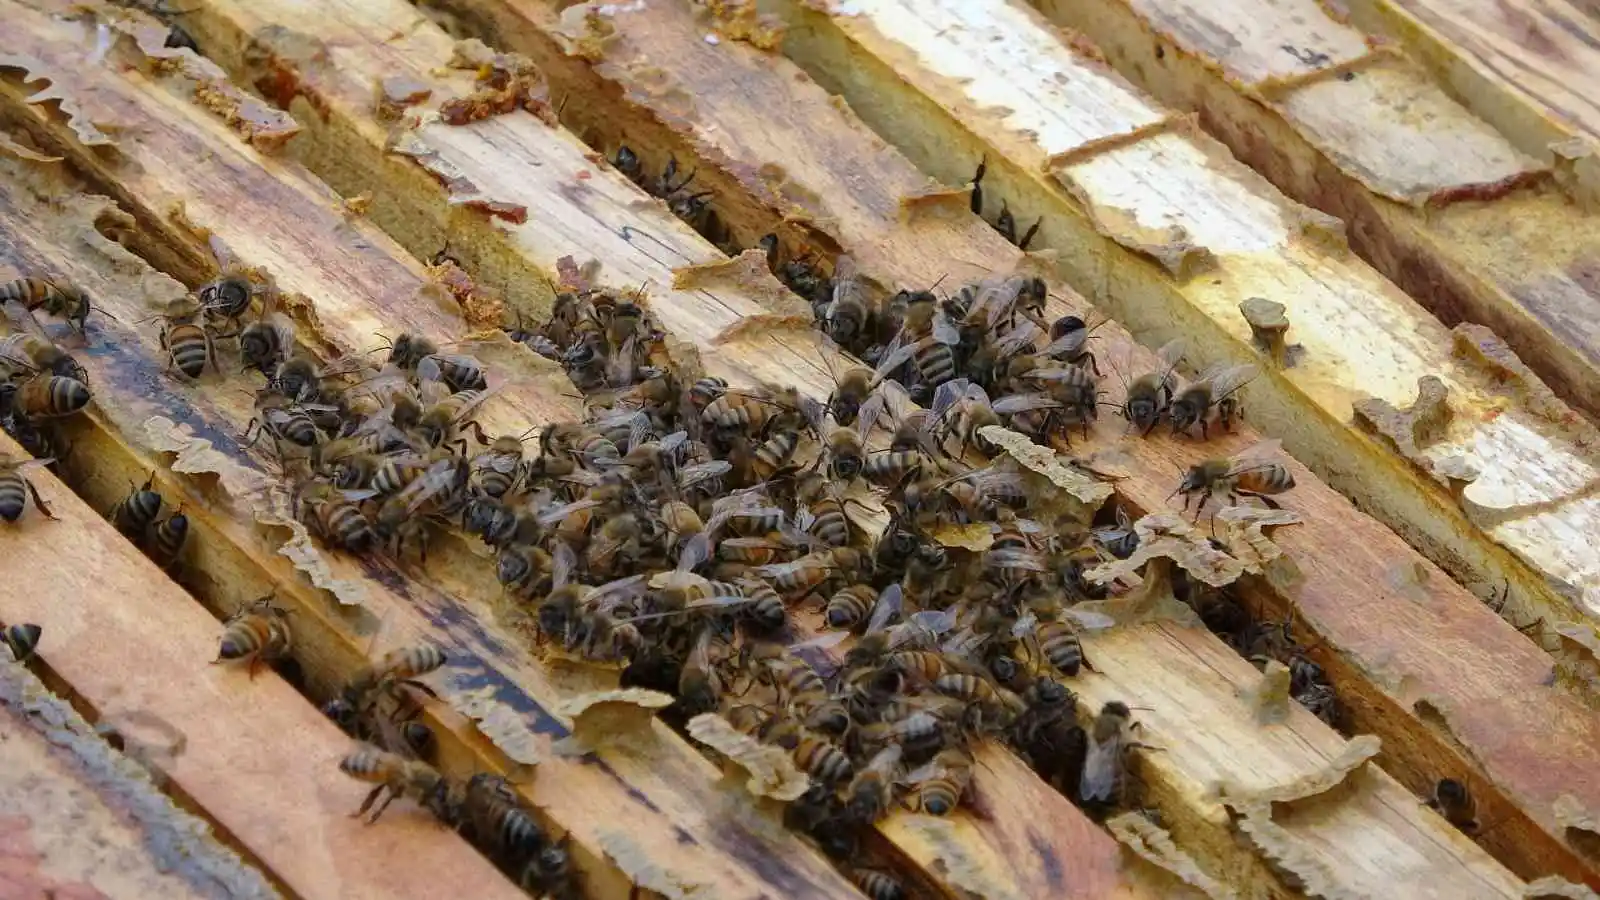 Küresel ısınma ’arıları’ da etkiledi: Uyuması gerekirken uçuyorlar
